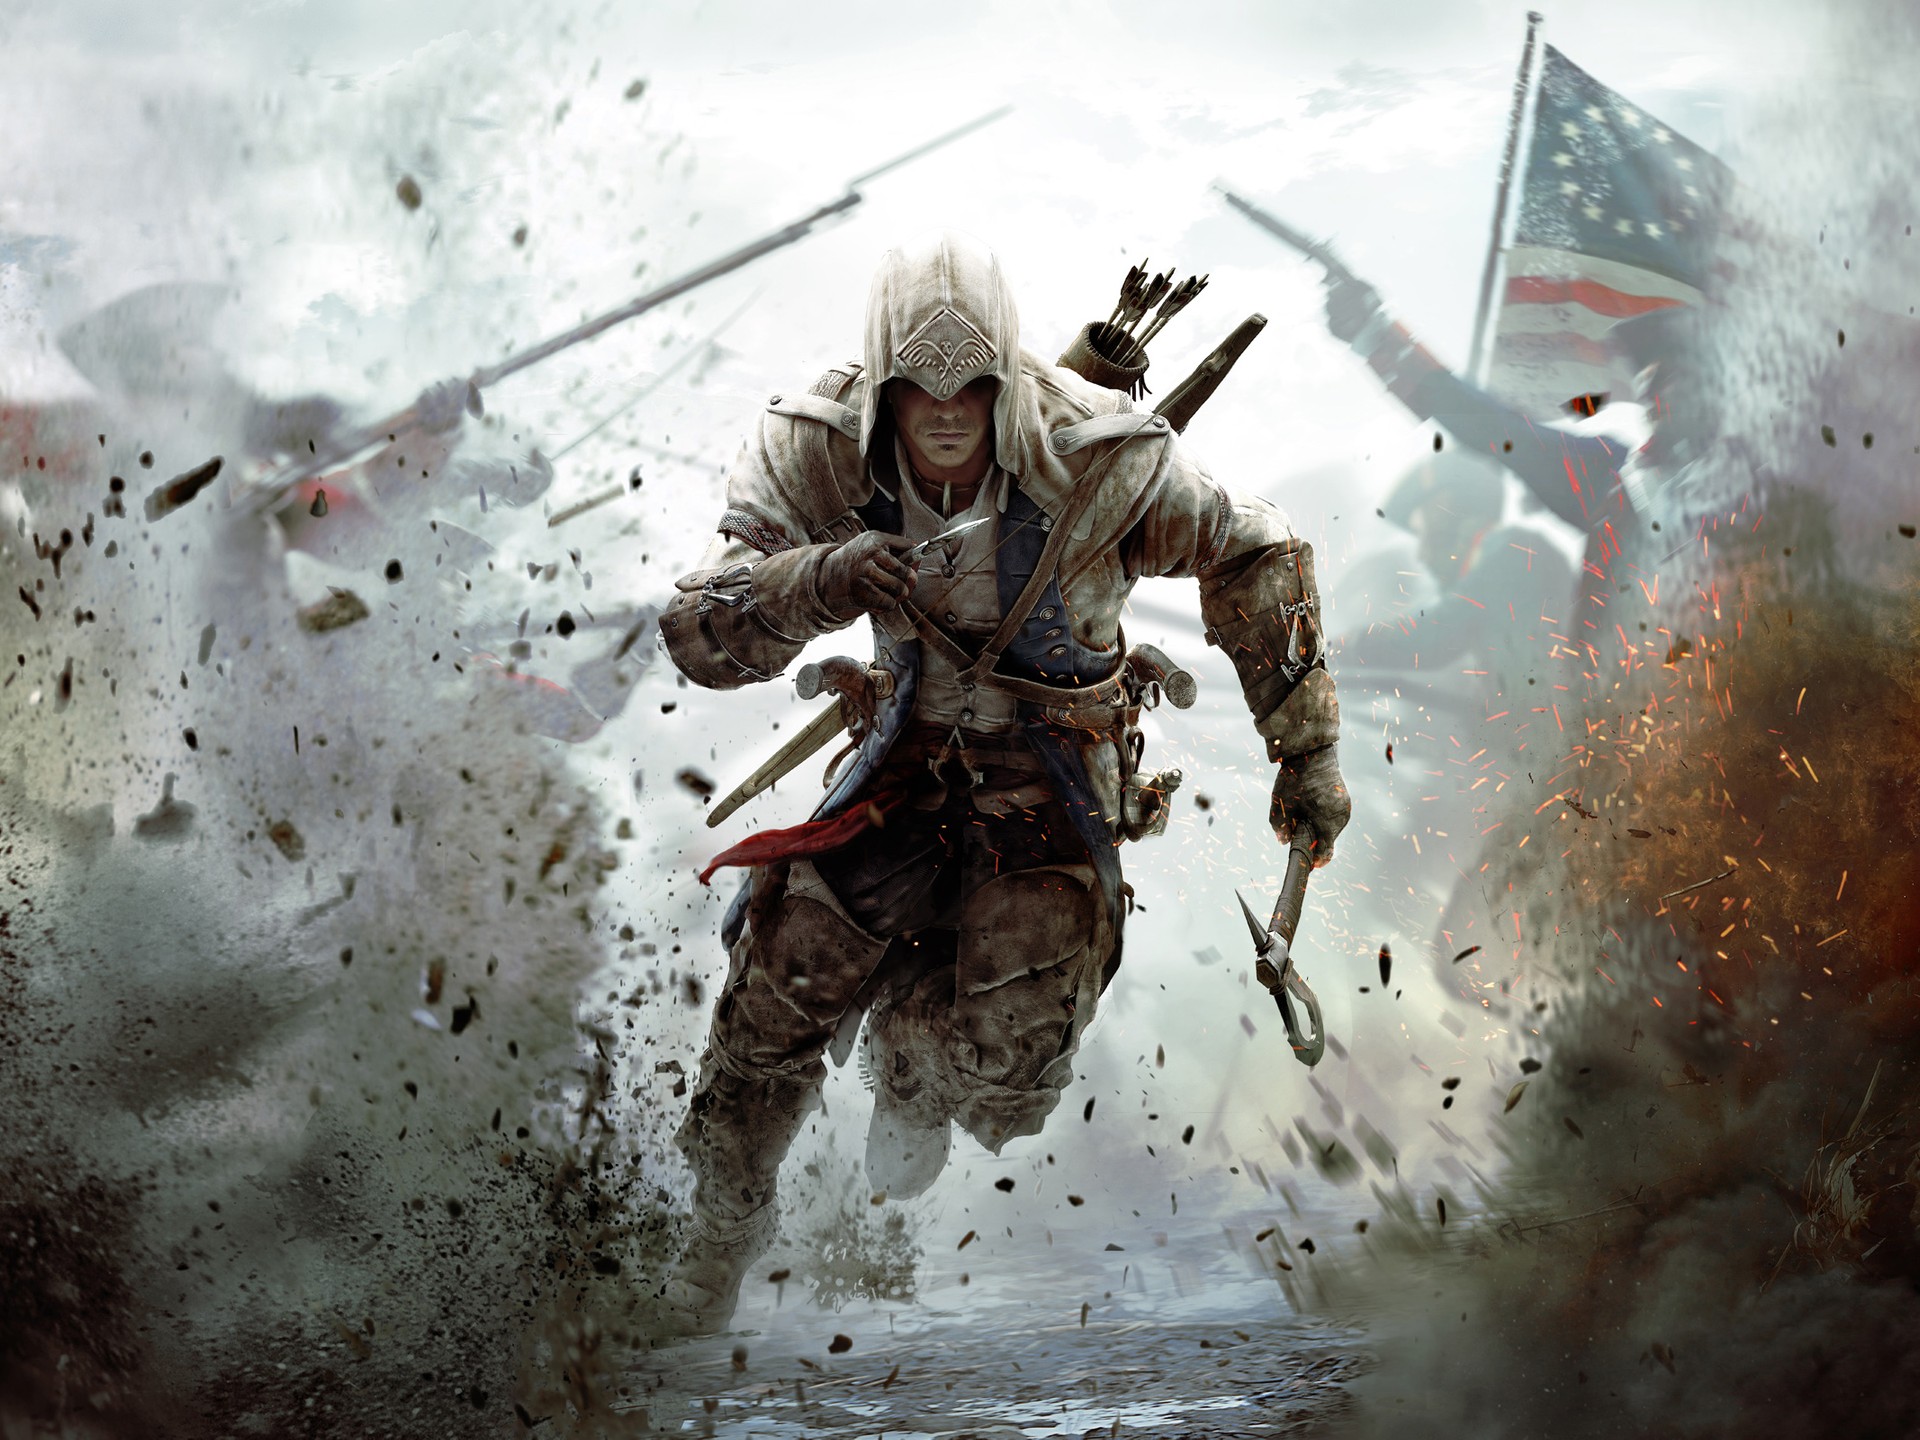 De graça: Assassin's Creed 2 está disponível para PC